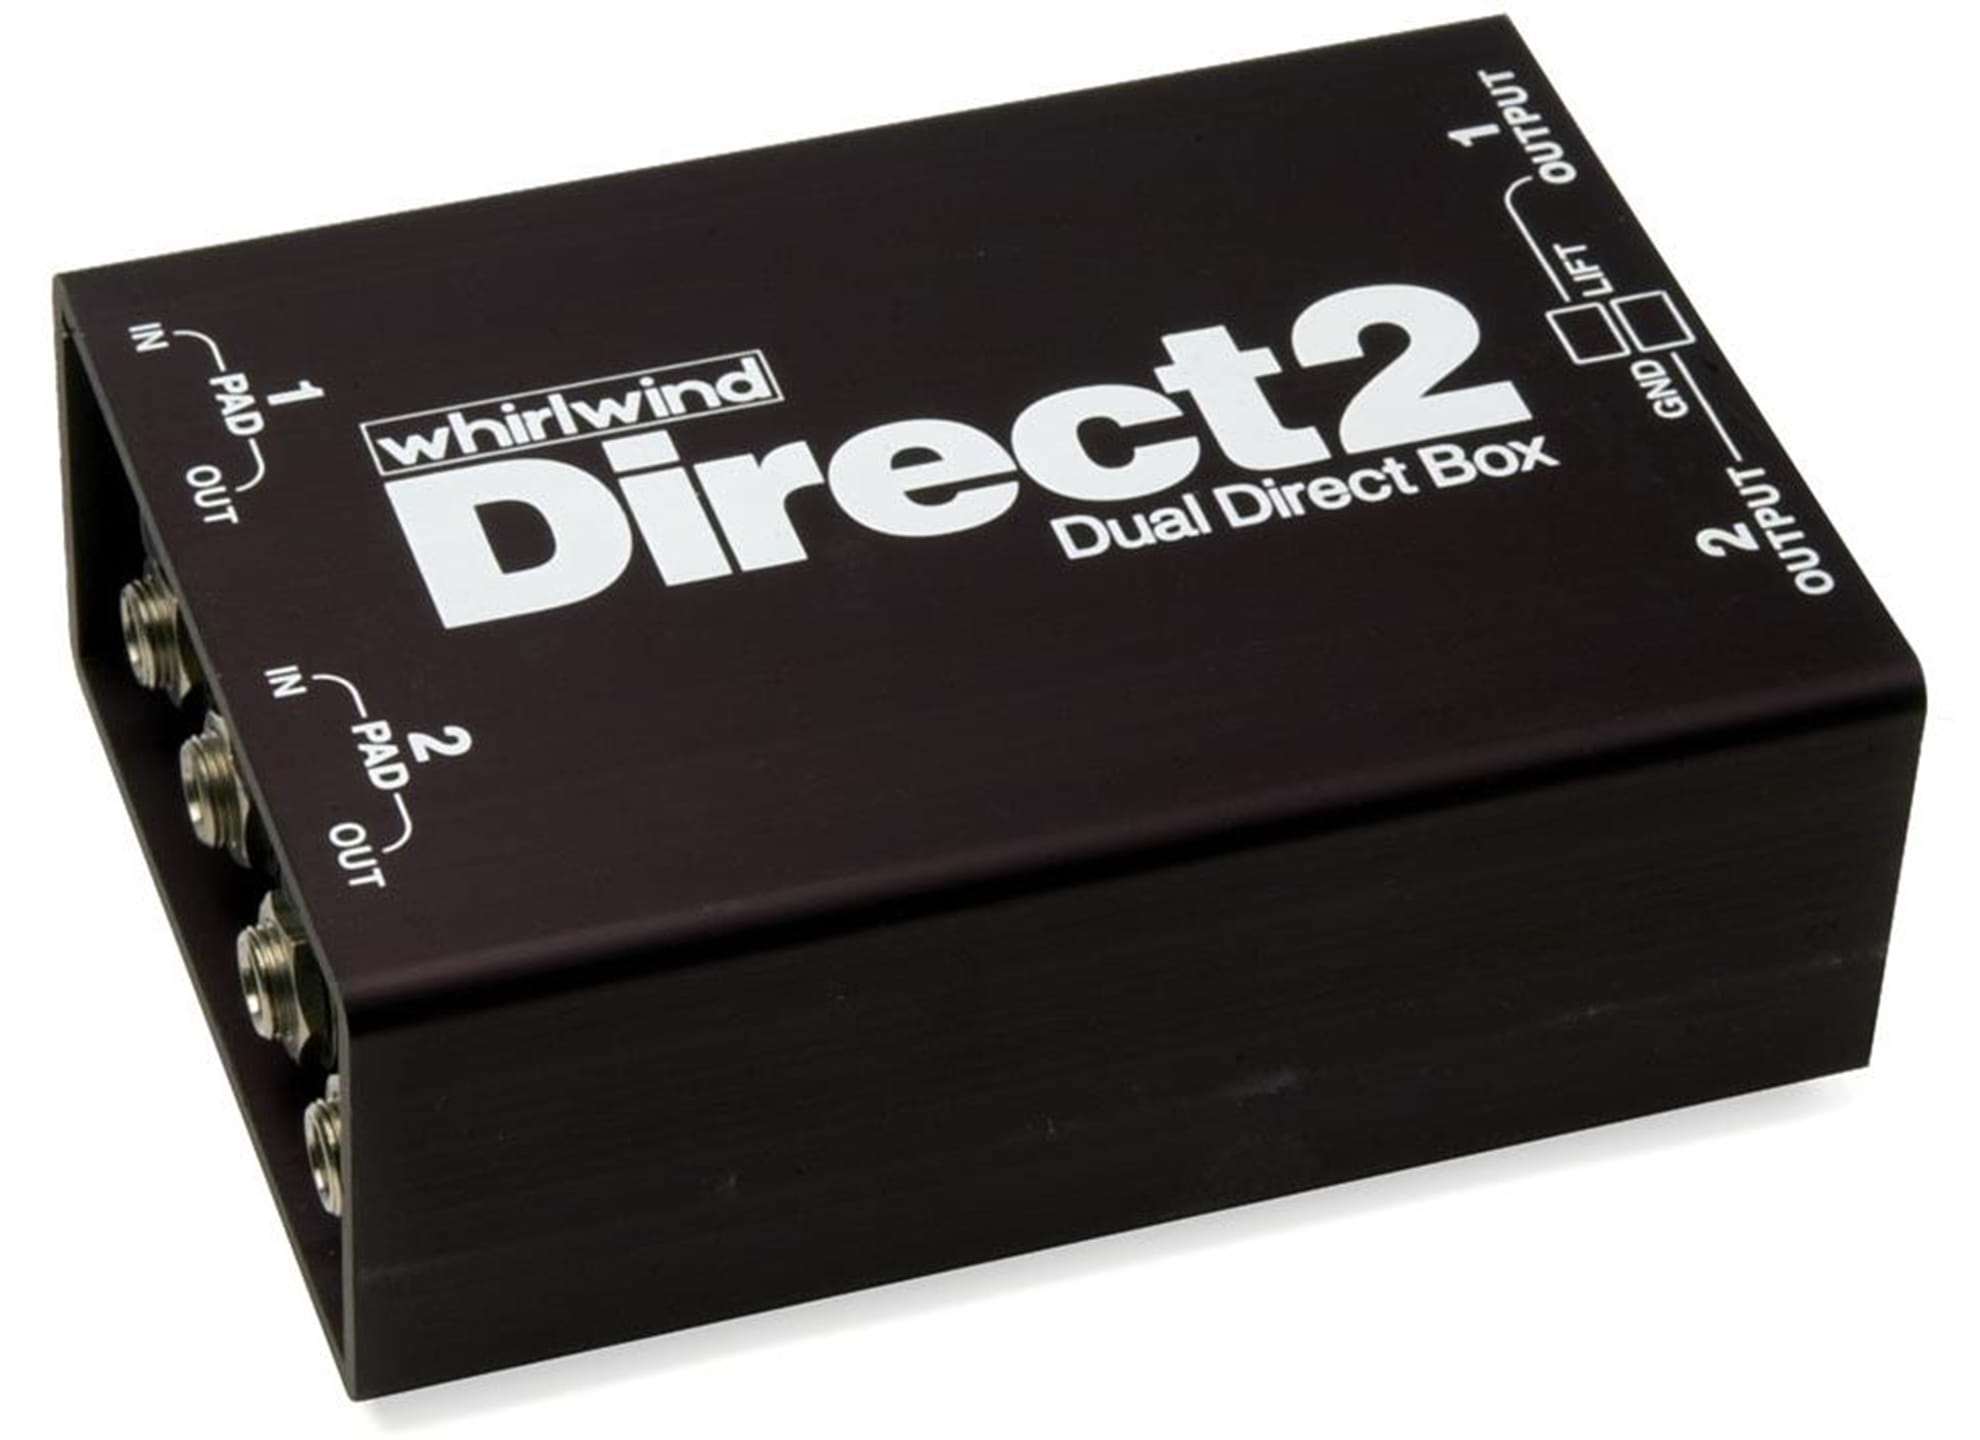 Direct 2